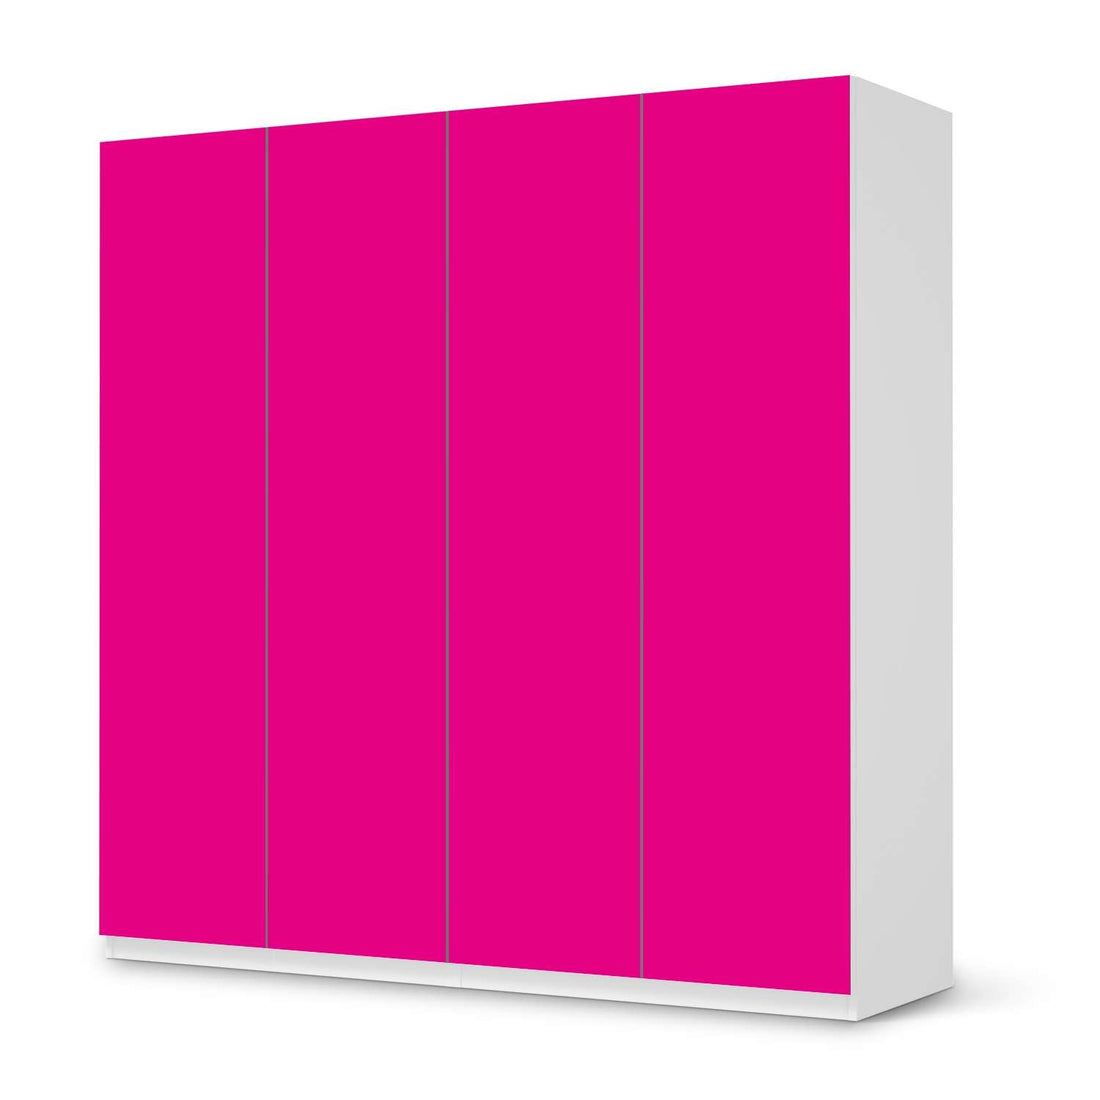 Klebefolie für Schränke Pink Dark - IKEA Pax Schrank 201 cm Höhe - 4 Türen - weiss